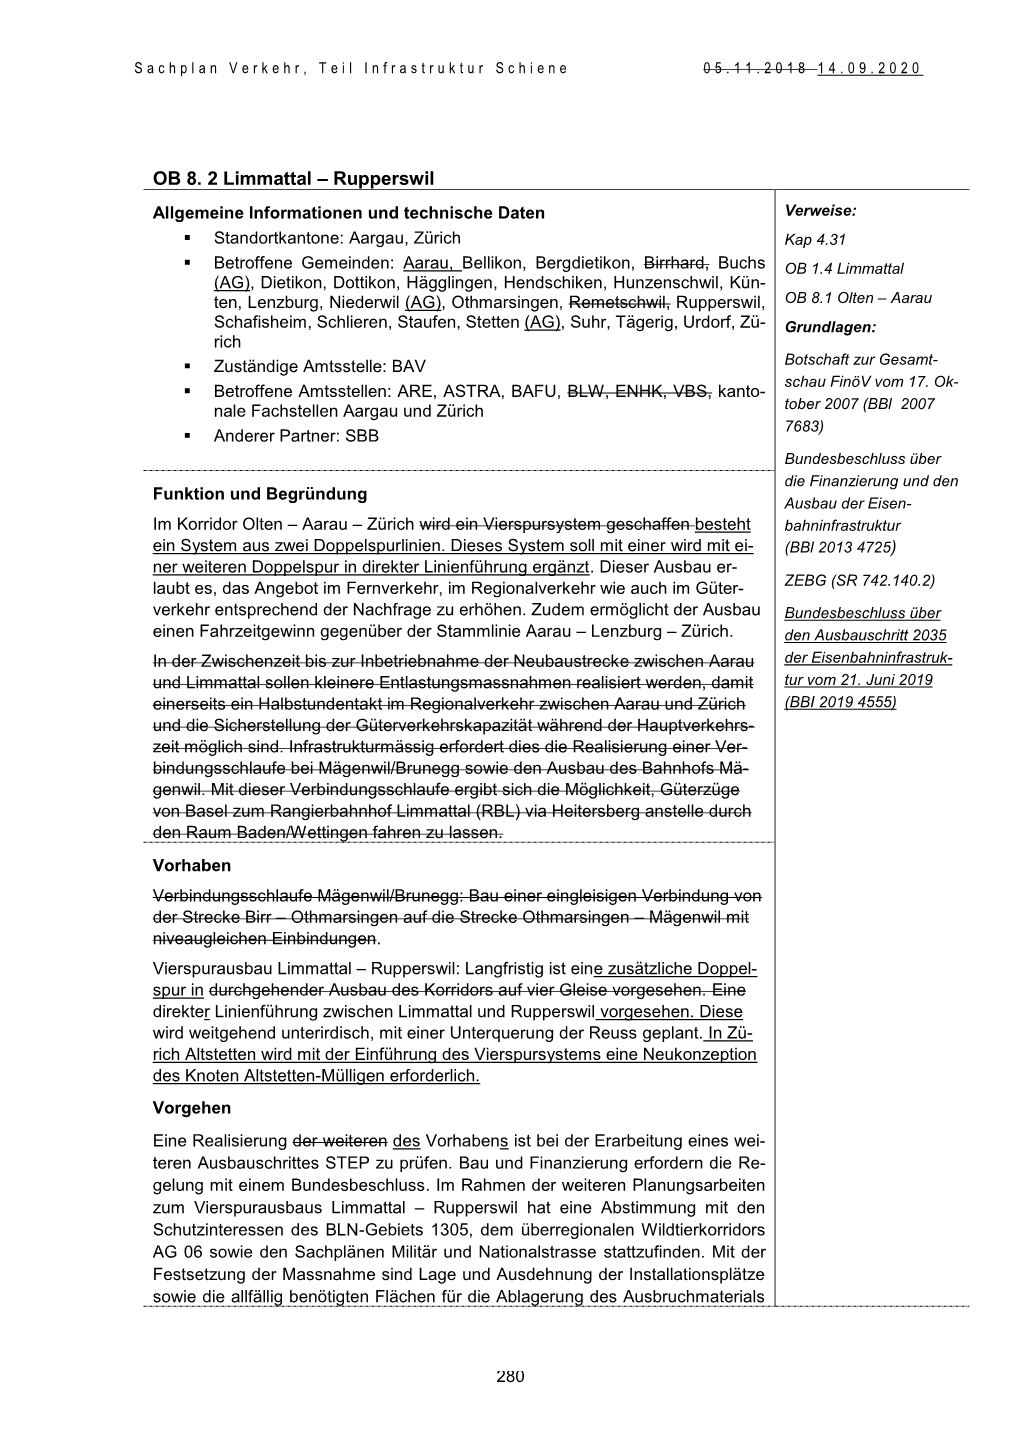 OB 8. 2 Limmattal – Rupperswil Allgemeine Informationen Und Technische Daten Verweise